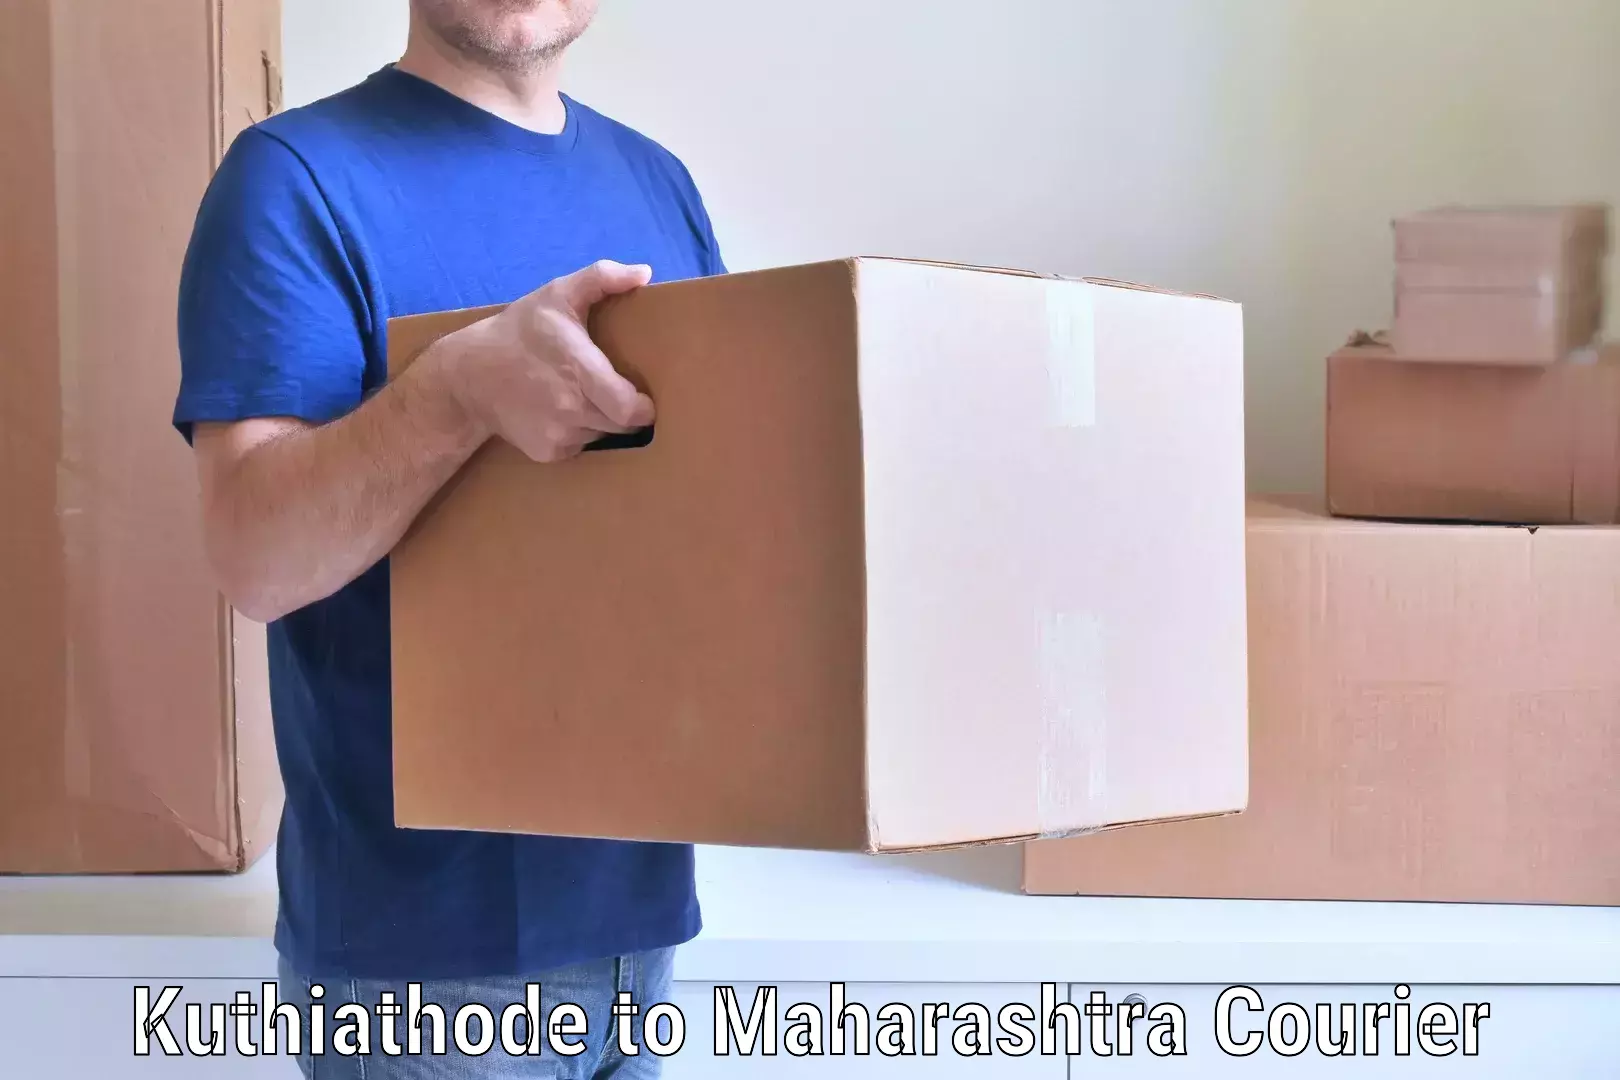 Trusted furniture movers Kuthiathode to Maharashtra